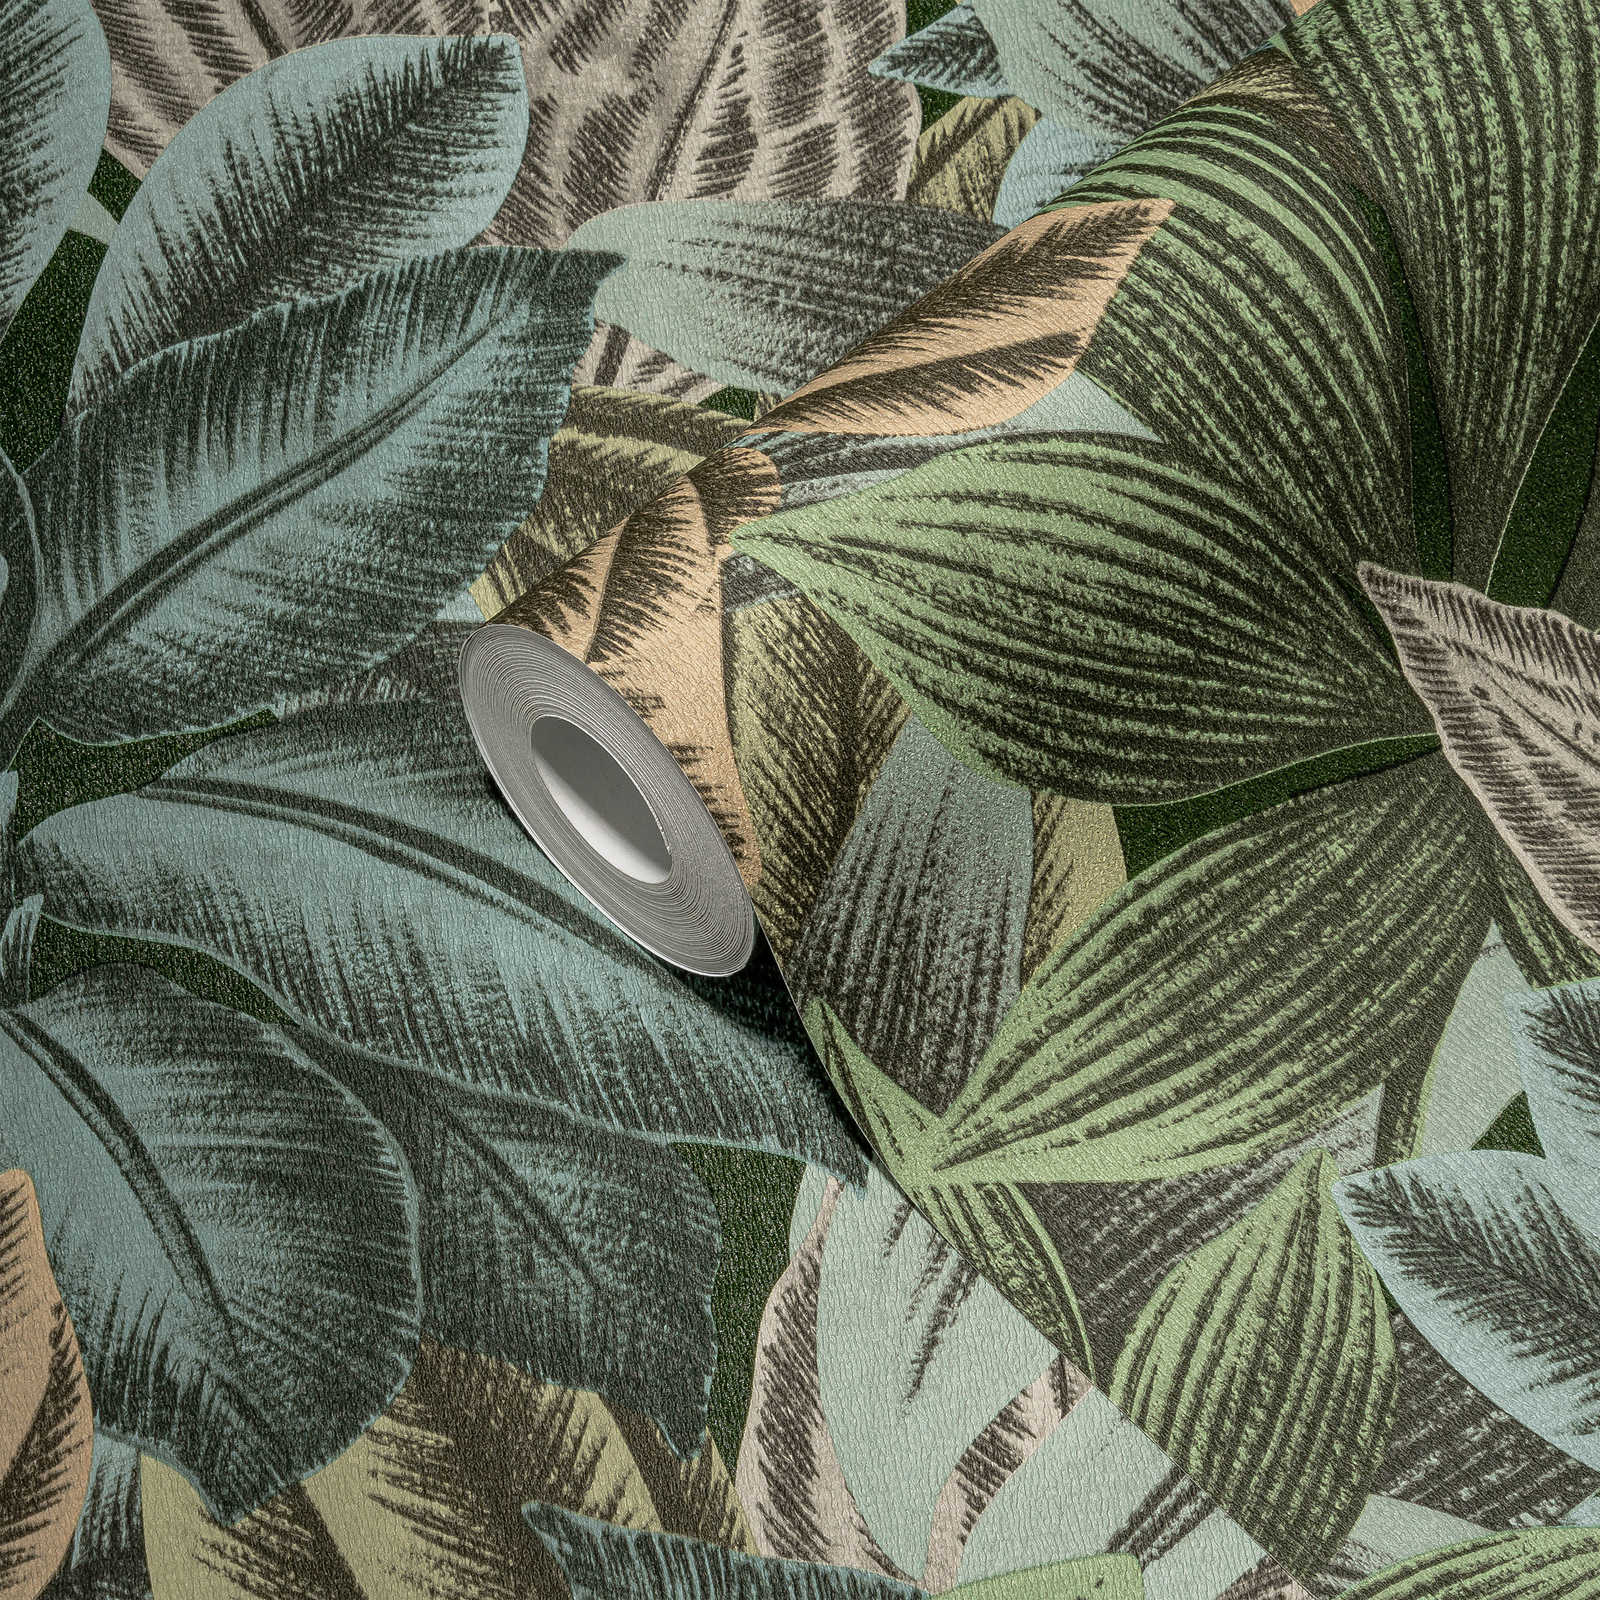             Blattmuster Tapete mit tropischen Look – Grün, Blau, Grau
        